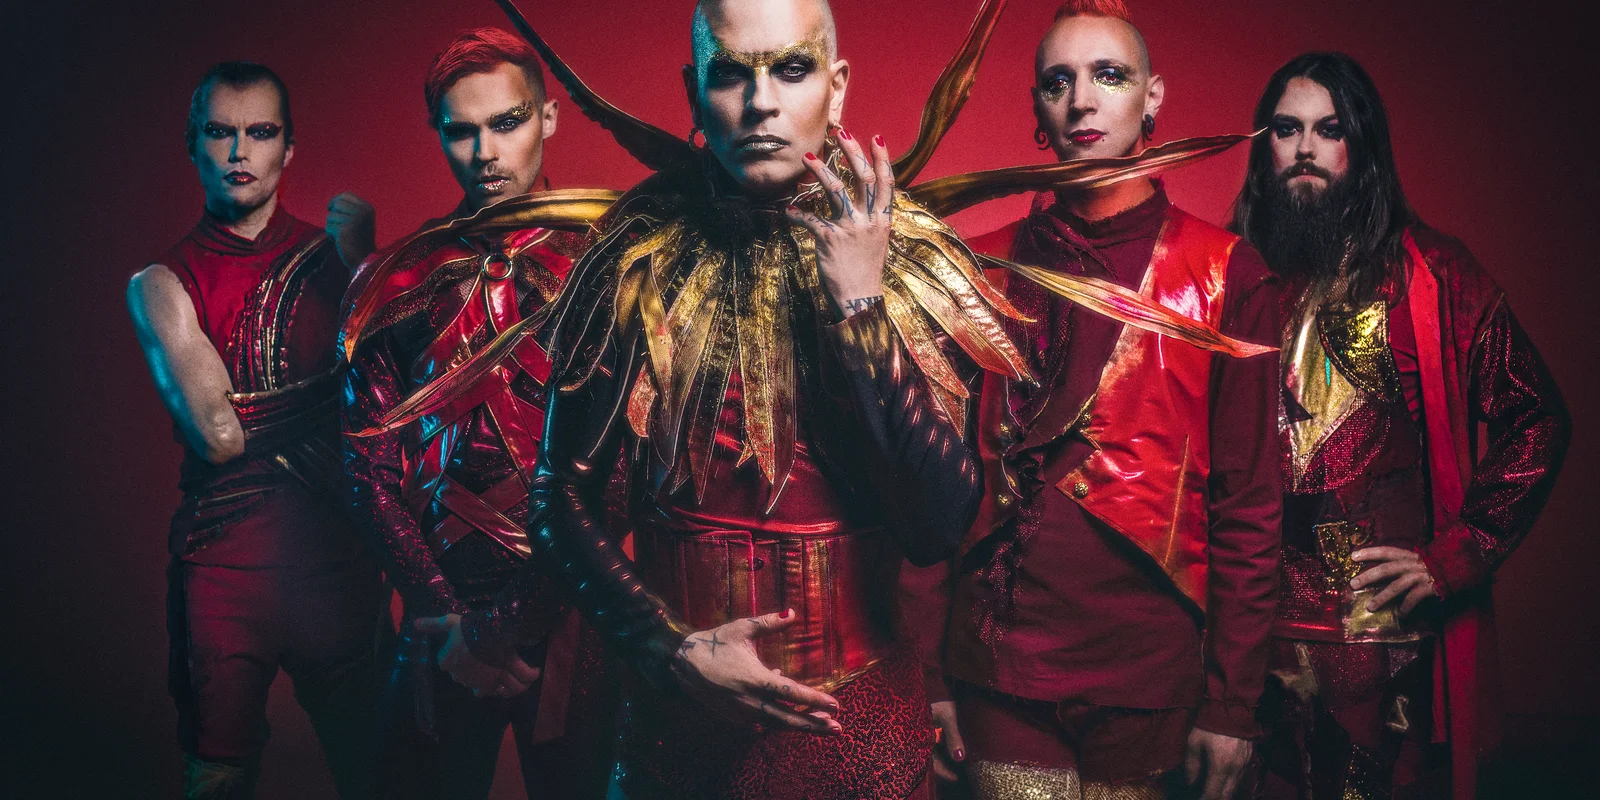 Bandfoto Lord of the Lost – die Bandmitglieder tragen rot-goldene Kostüme.